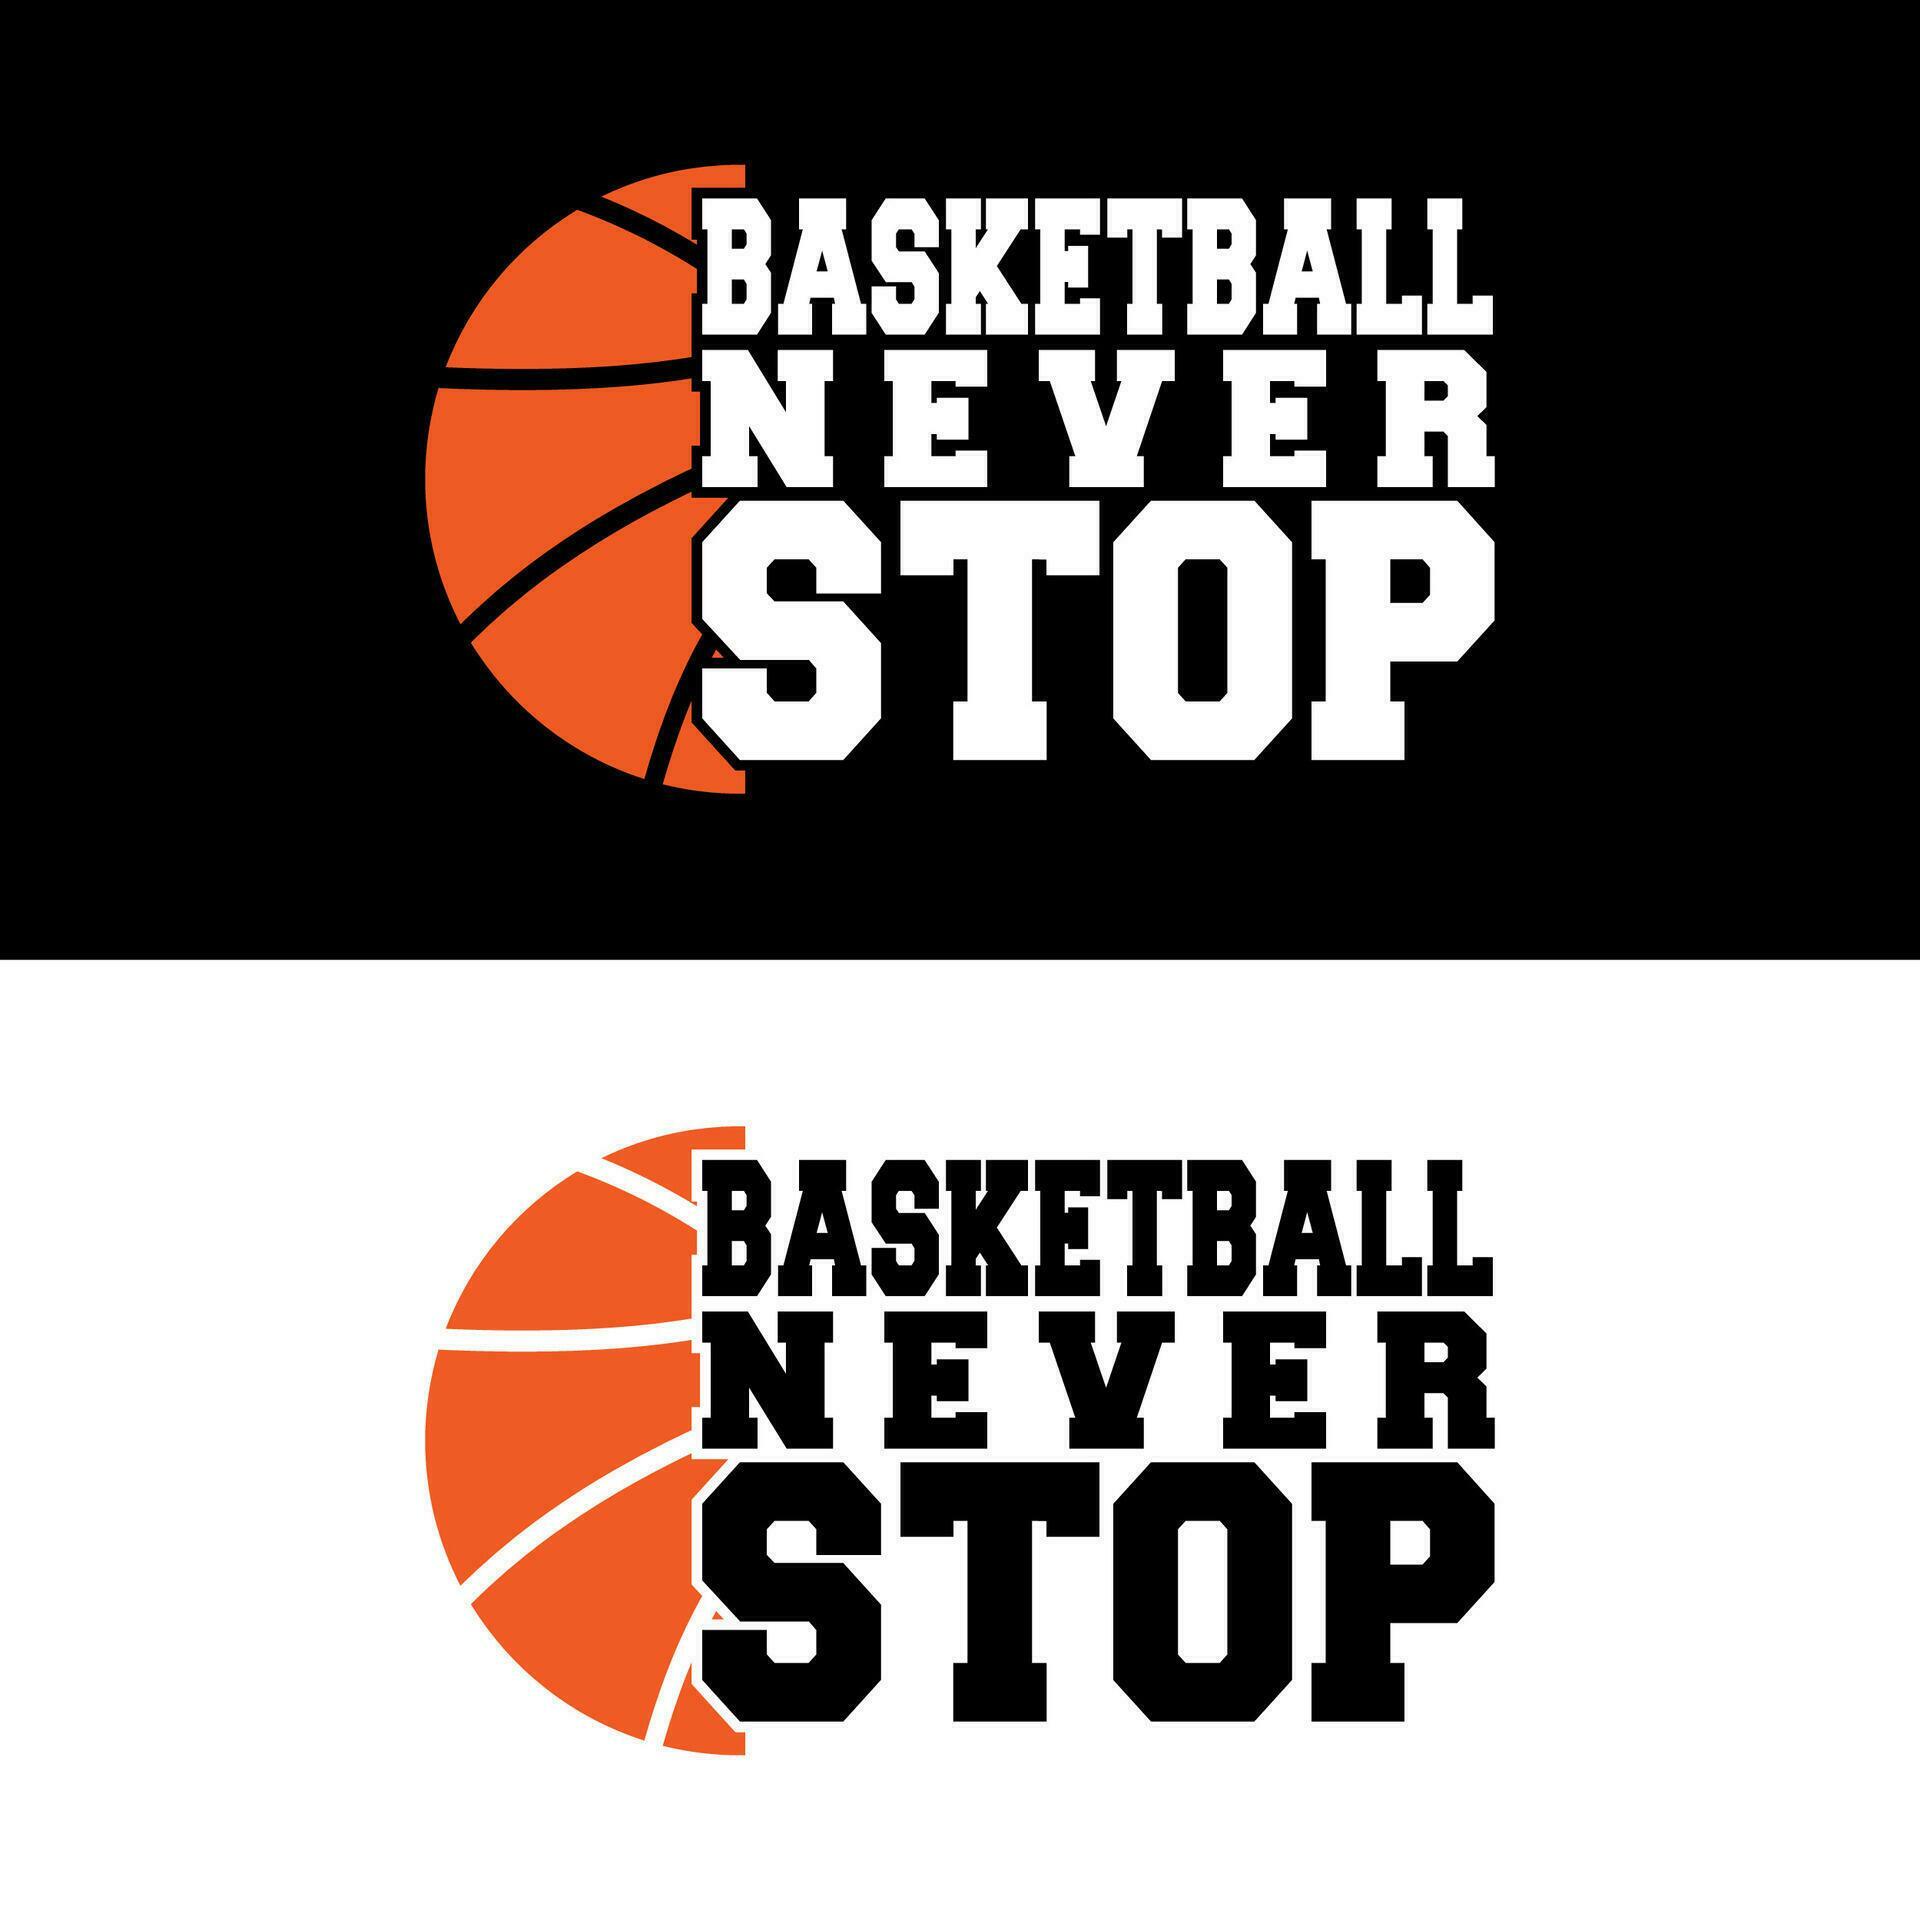 Basketball Never Stop T-Shirt Design 28194536 Vector Art at Vecteezy